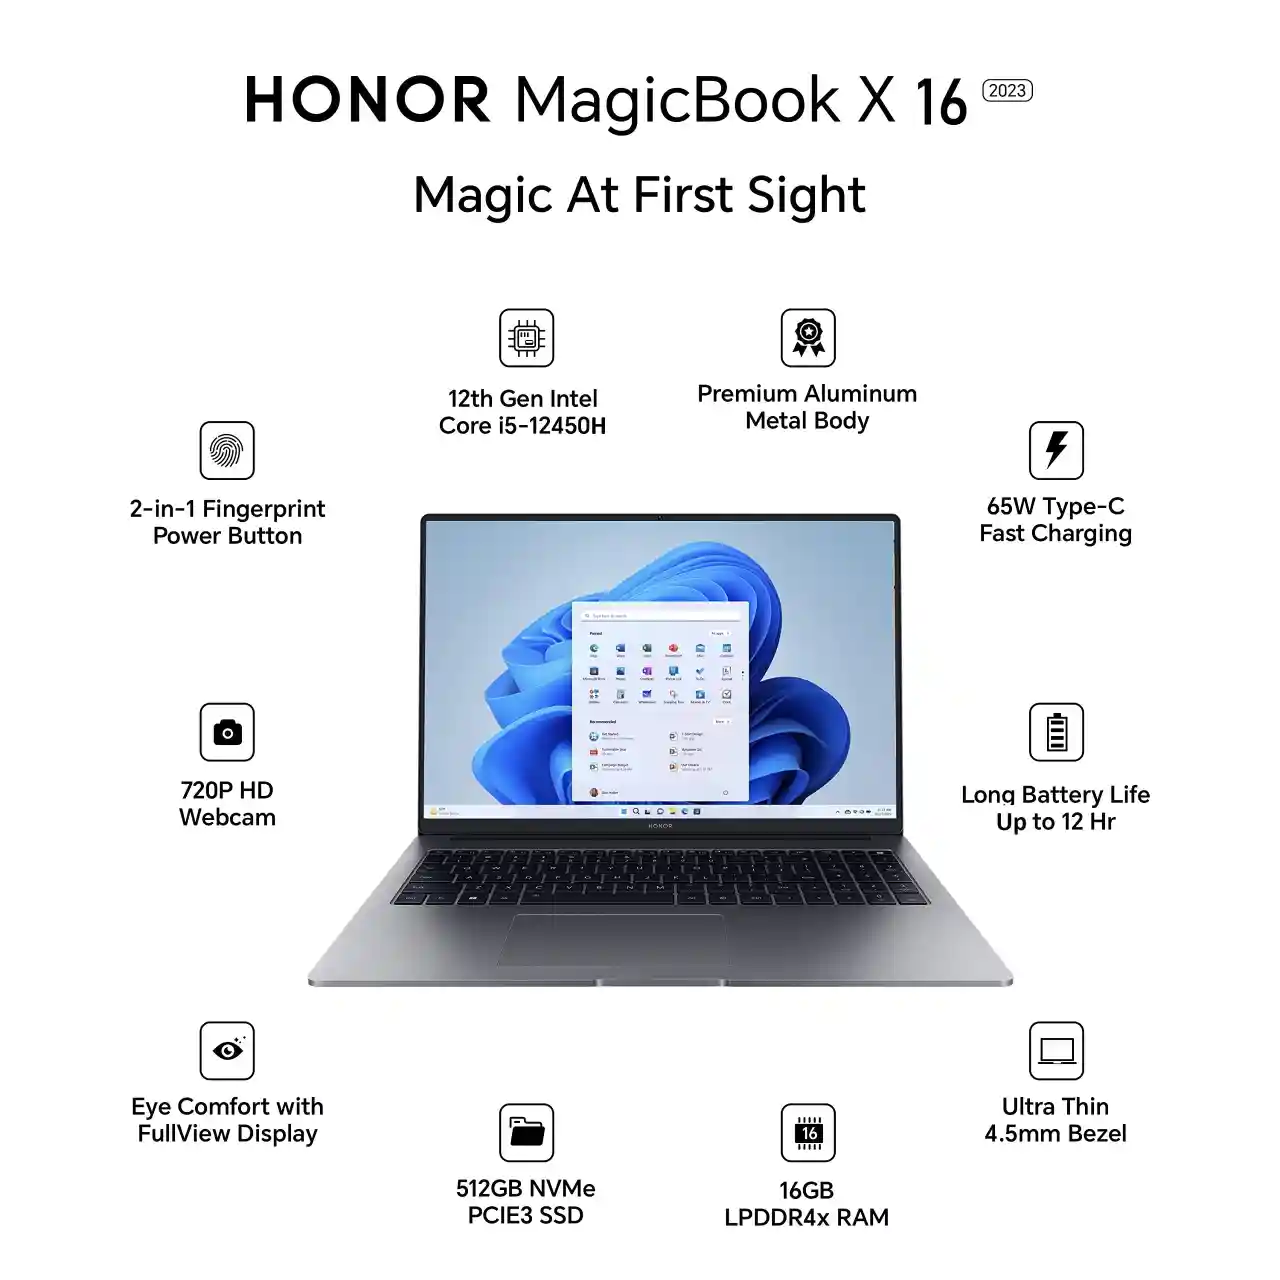 Honor offerte Back to School: sconti fino al 30% su smartphone, notebook e tablet e coupon per ulteriori risparmi